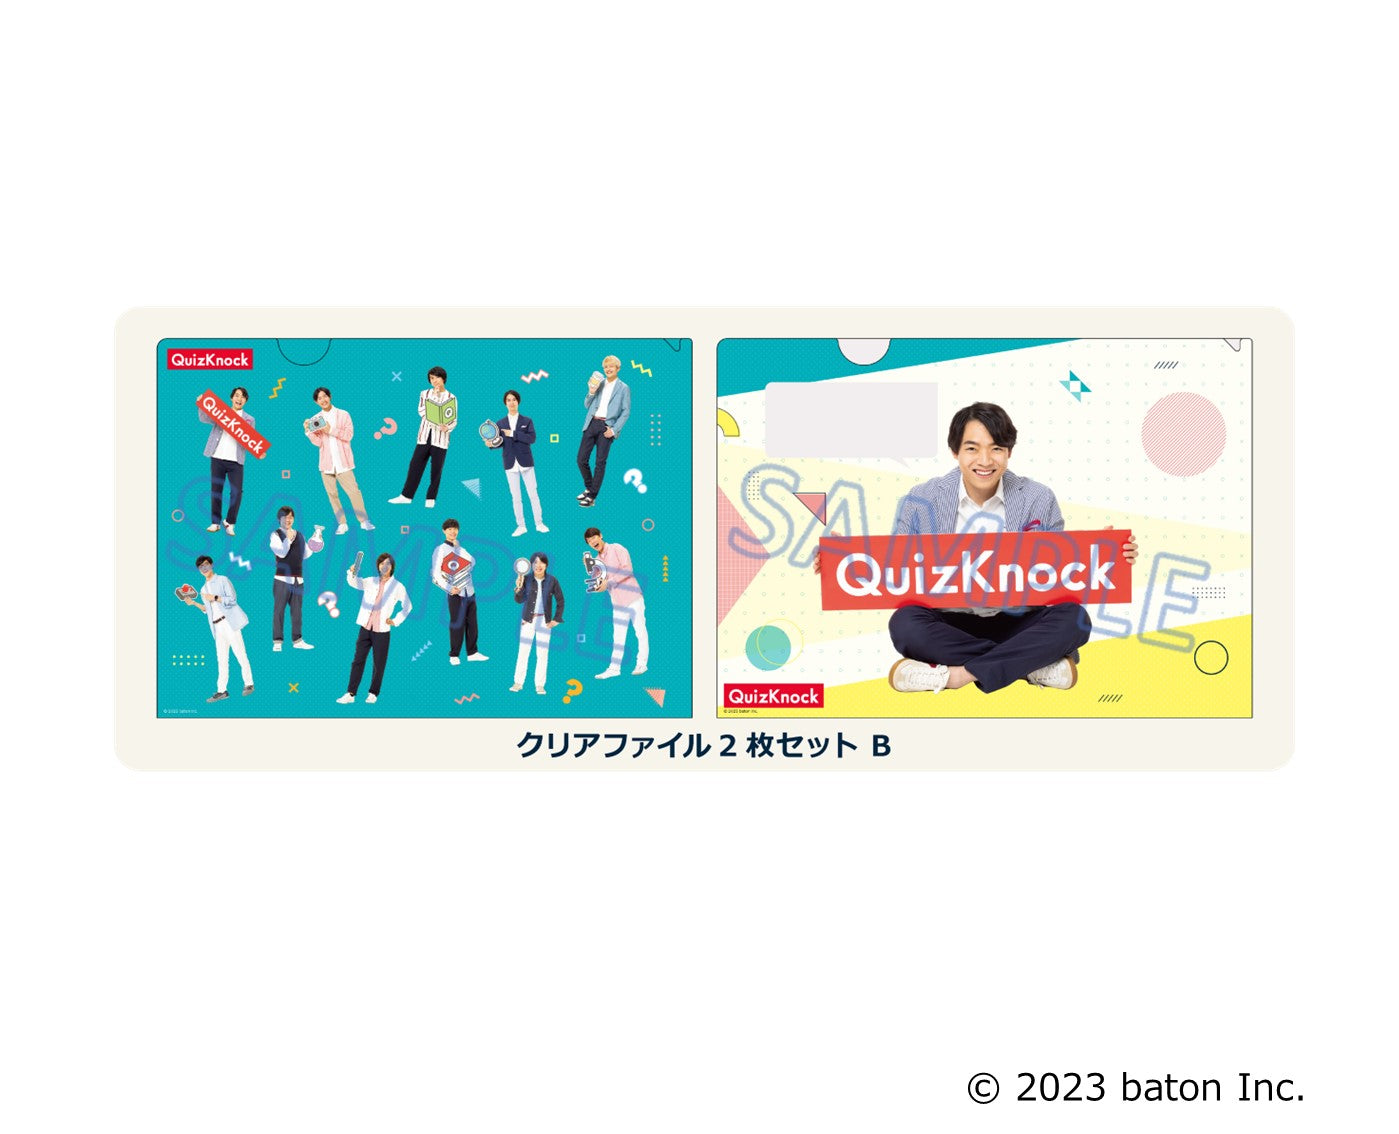 GiGO コラボカフェ QuizKnock クリアファイル2枚セットB(全1種)【2023 